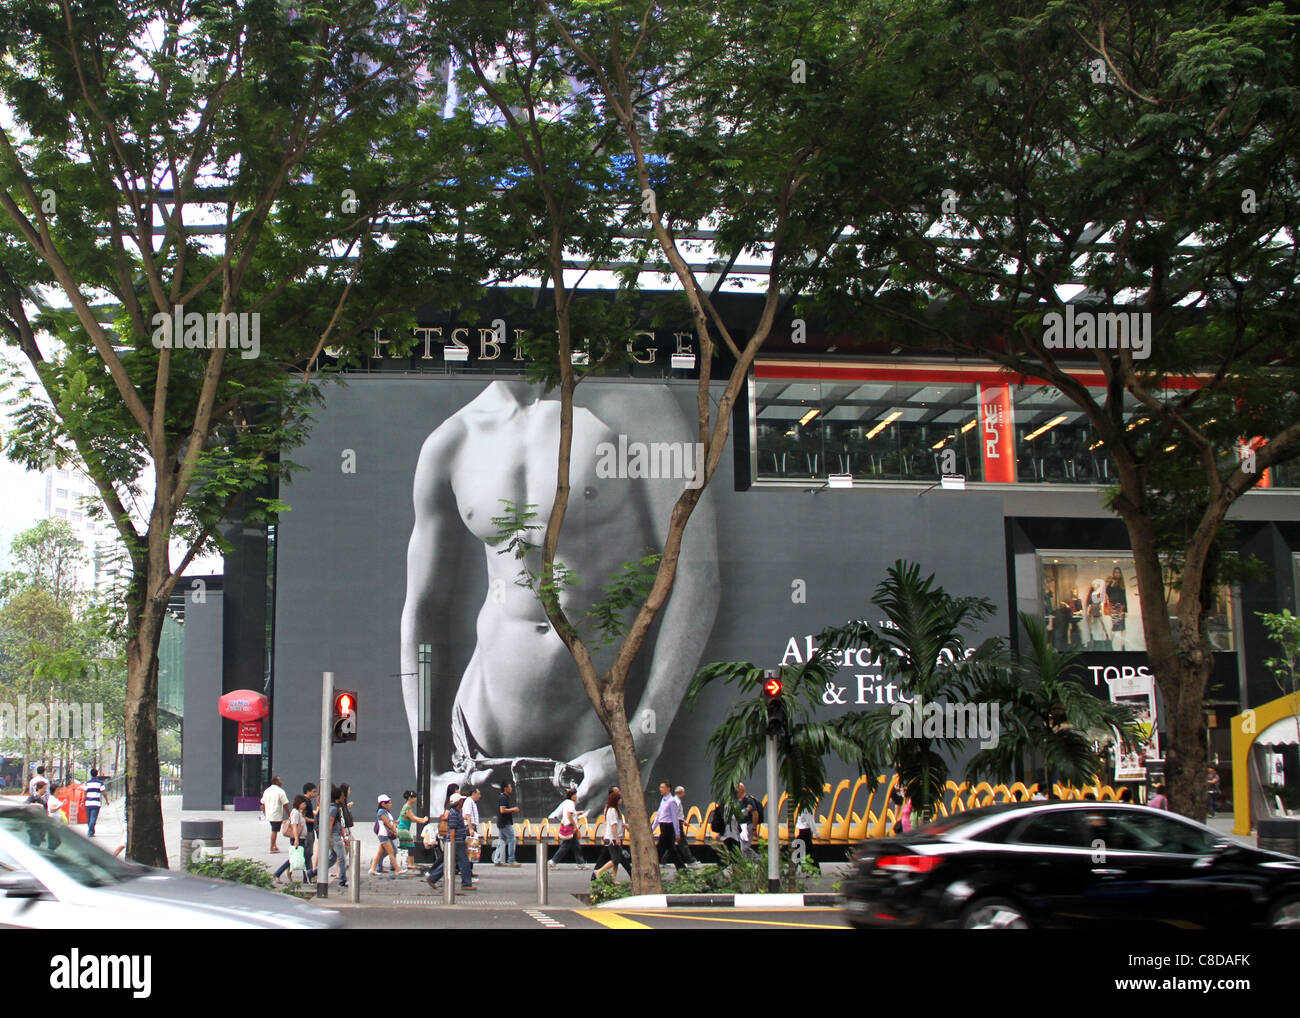 Occupato Orchard Road, il quadrilatero della moda per designer etichette quali Abercrombie e Fitch. Foto Stock